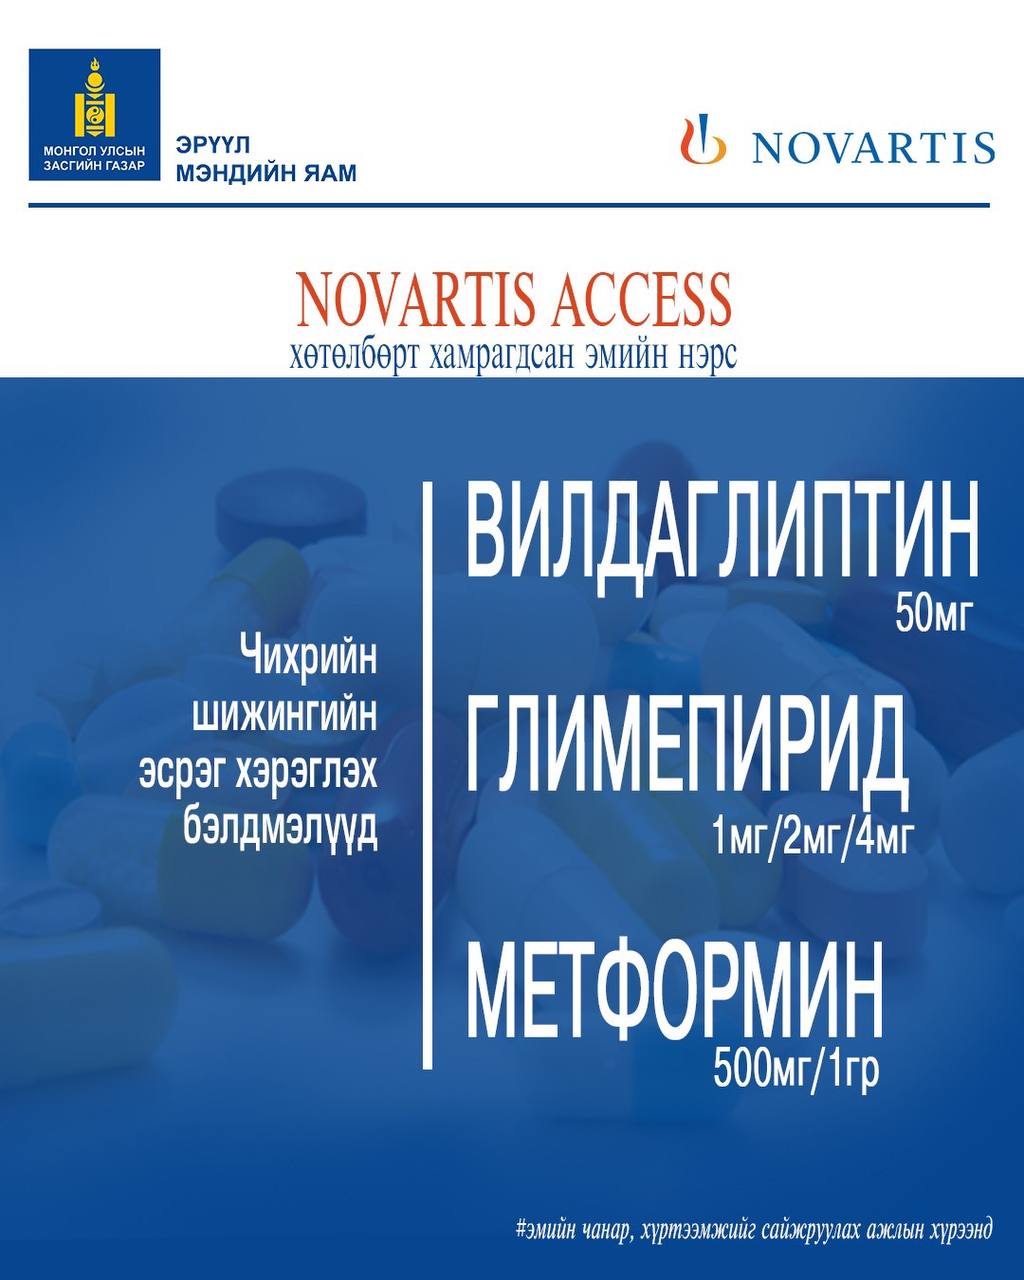 “NOVARTIS ACCESS” хөтөлбөрийн хүрээнд ЧИХРИЙН ШИЖИН өвчний үед хэрэглэгдэх гурван эмийг 1$-оор нийлүүлж эхэллээ